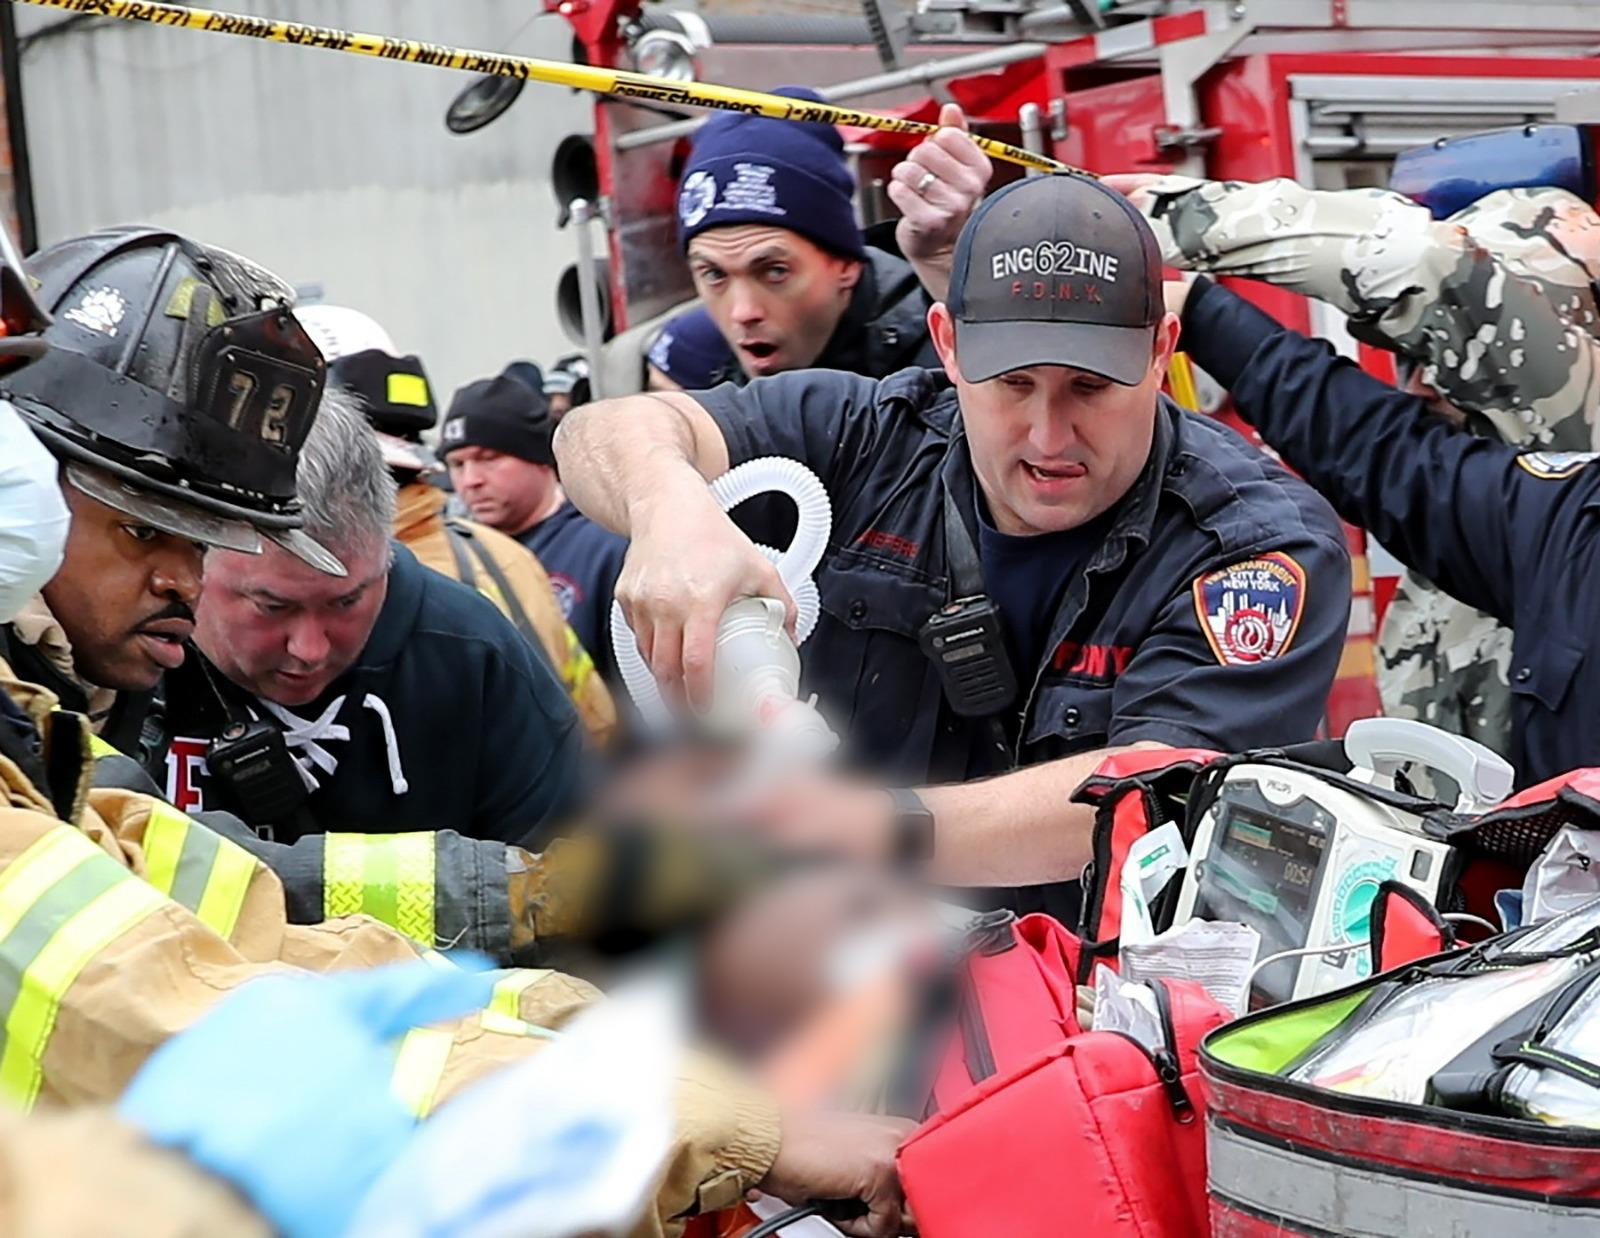 Imagini devastoare cu pompierii rămași fără oxigen în timp ce scot bebeluși din incendiul din New York. Victime la fiecare etaj pe casă scării